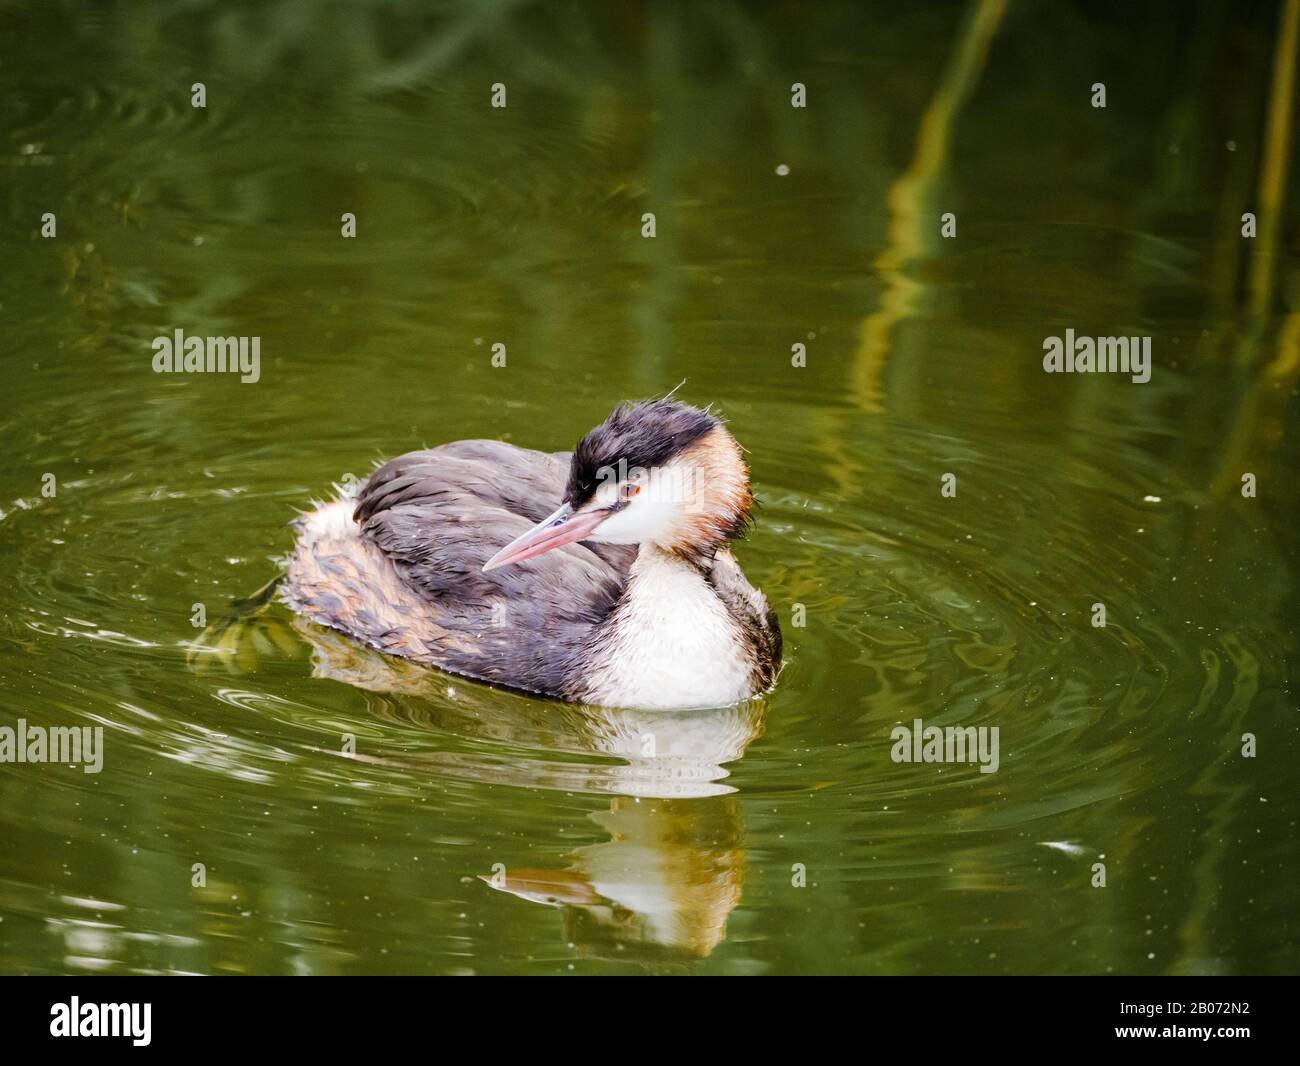 Grand grèbe à la craie (Podiceps cristatus) nageant adulte dans le plumage non reproductif, Pays-Bas Banque D'Images